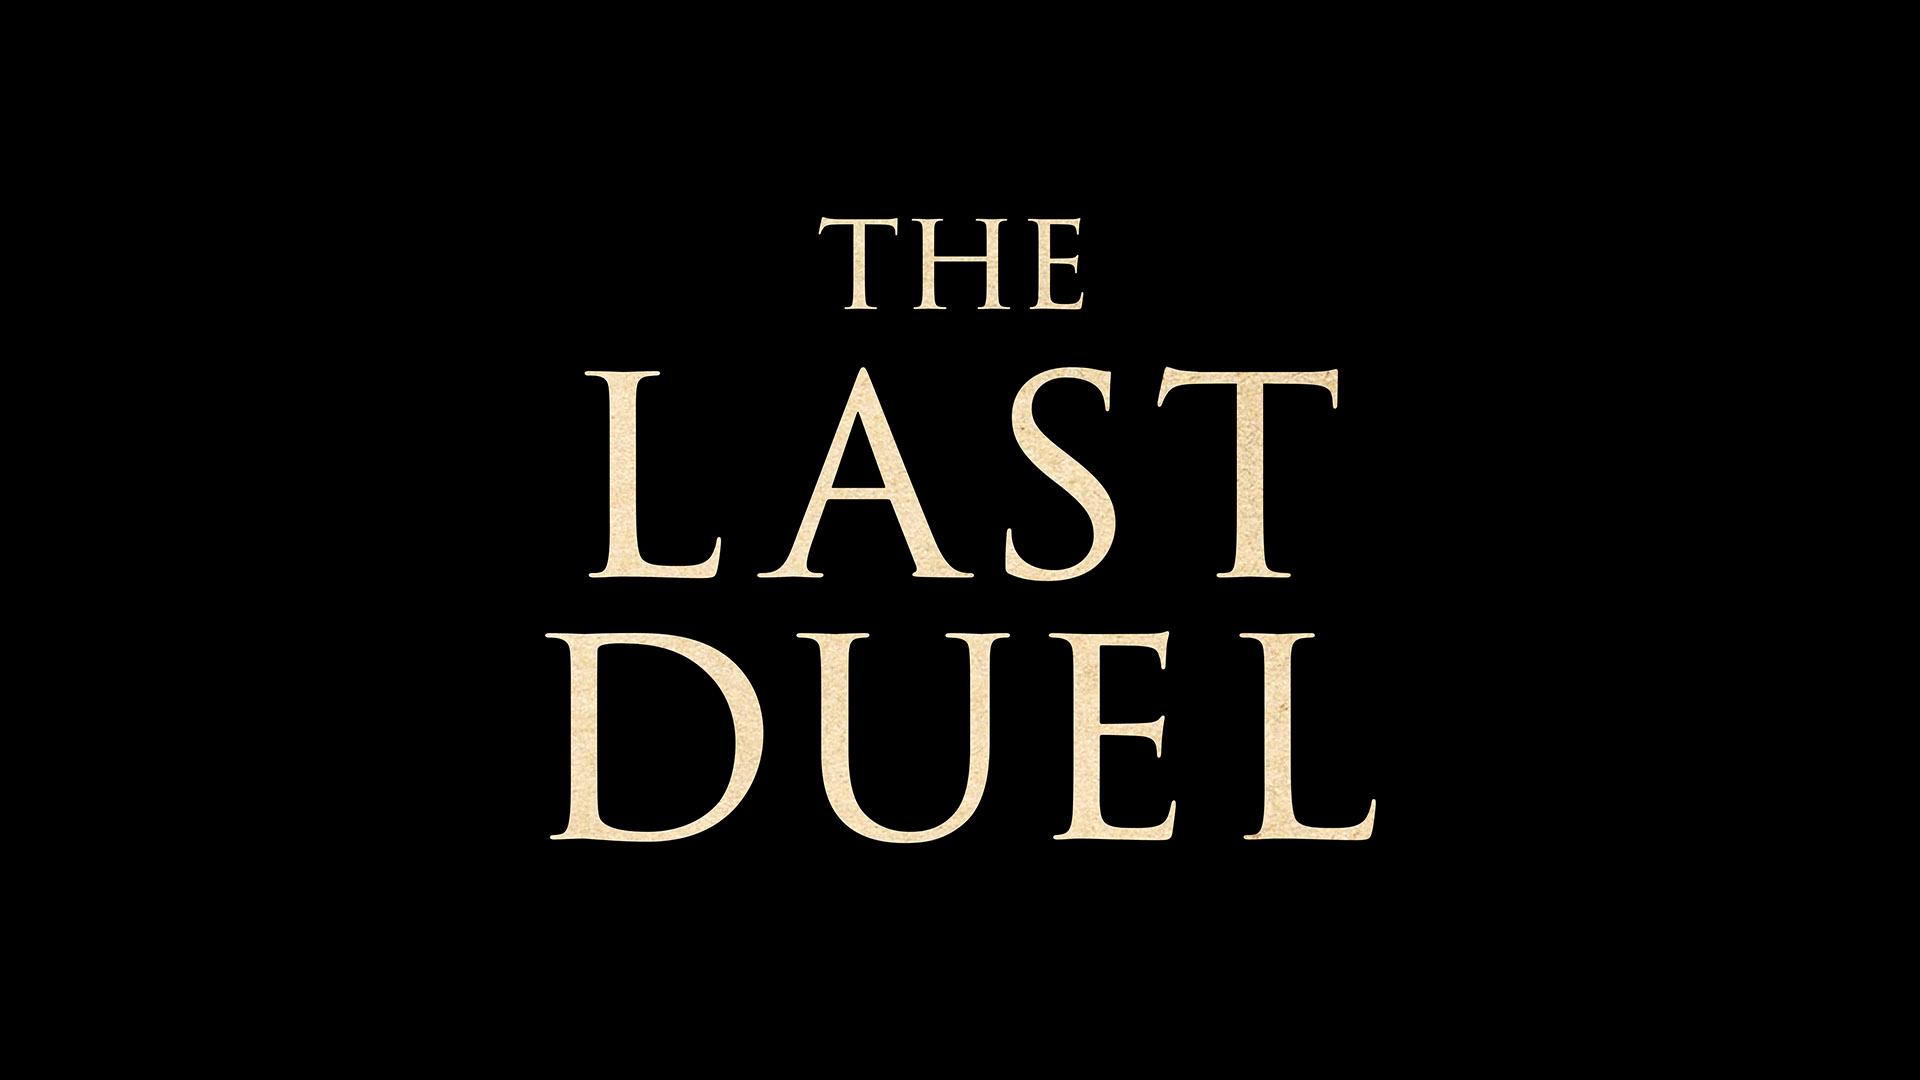 عنوان فیلم The Last Duel /آخرین دوئل روی صفحه‌ای مشکی رنگ